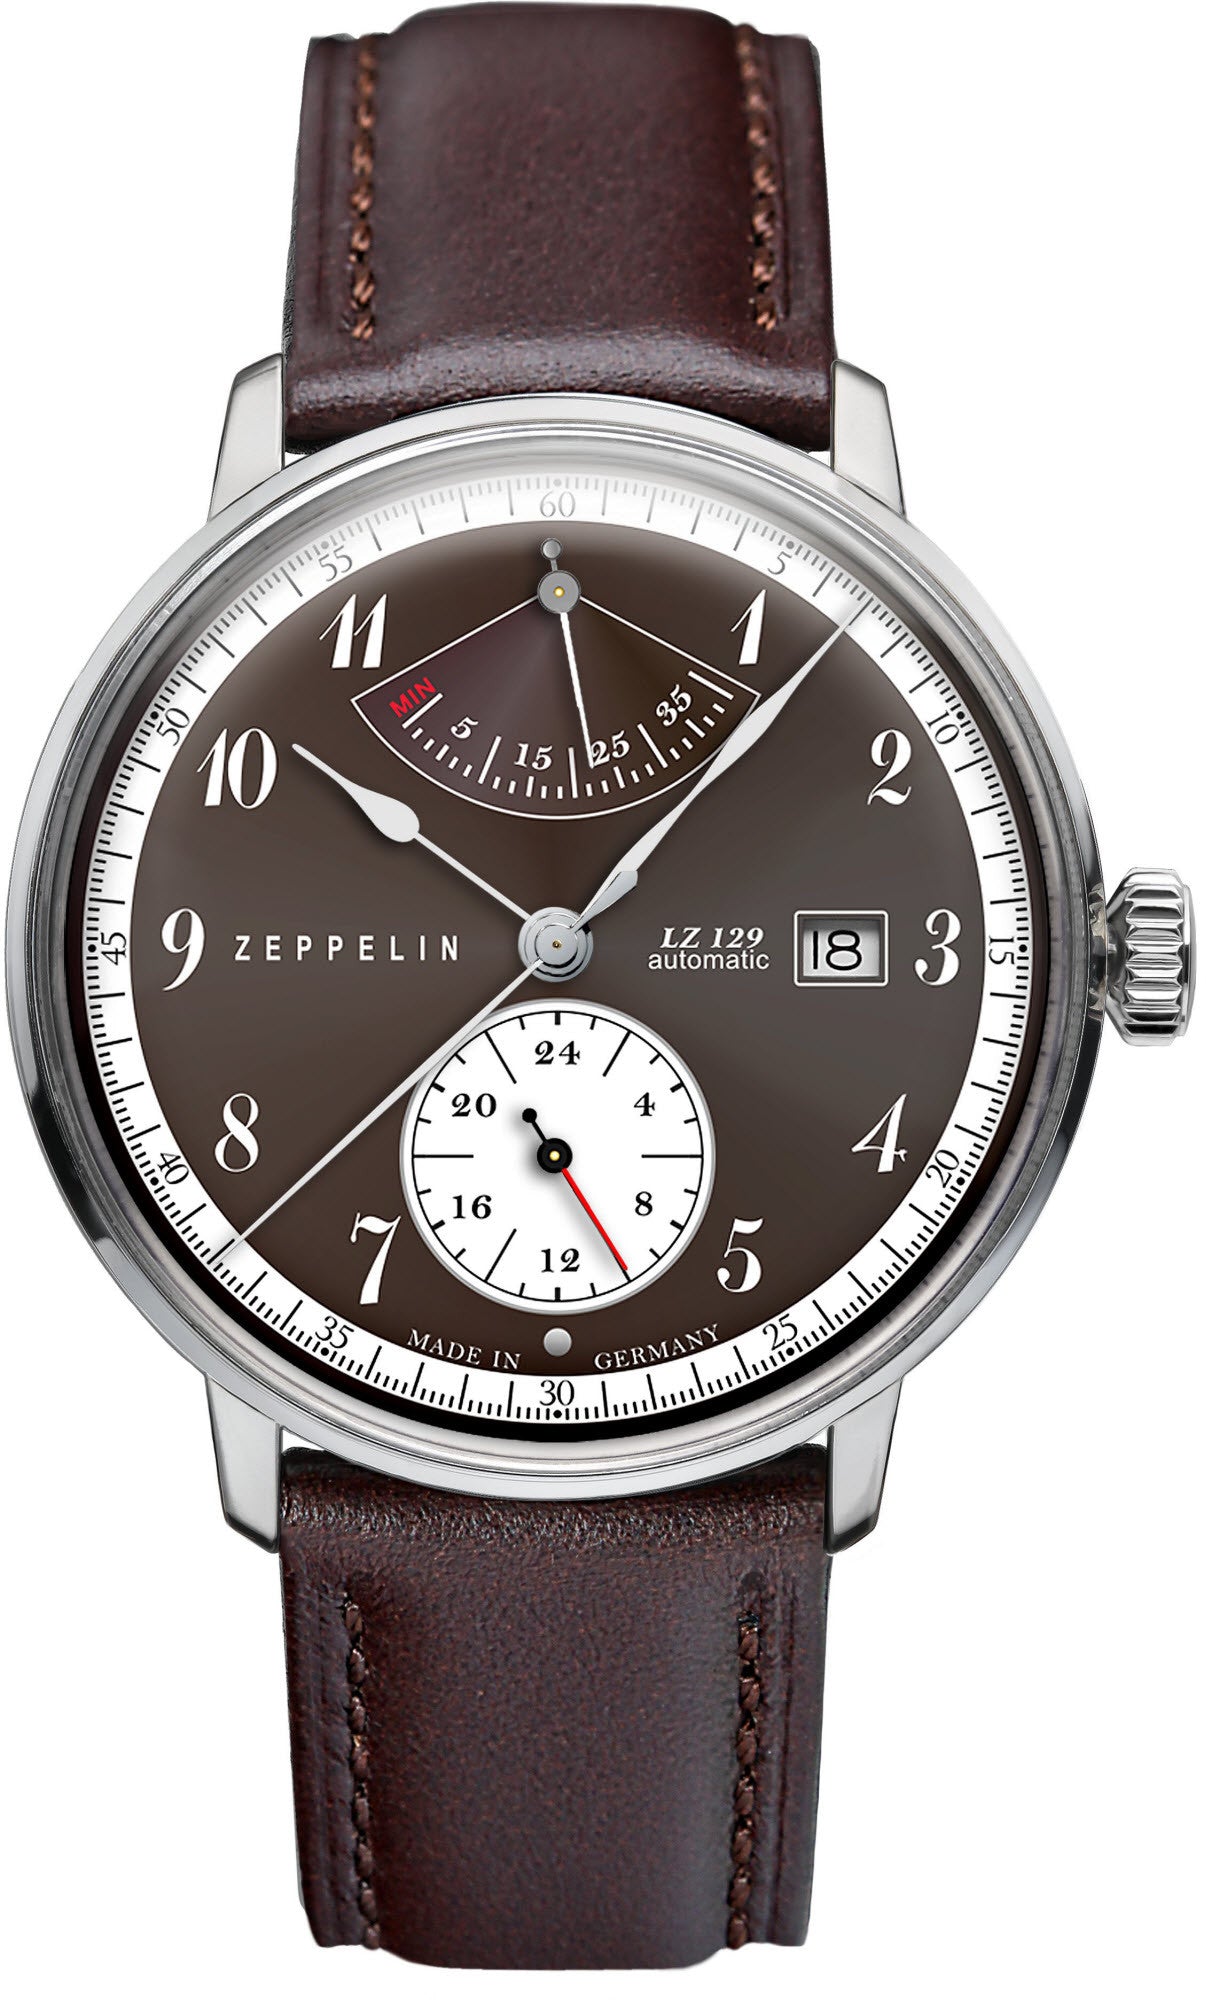 Мужские часы zeppelin. Часы Zeppelin LZ 129. Zeppelin lz129 Hindenburg часы. Часы мужские Zeppelin LZ 129. Часы Zeppelin Power Reserve.